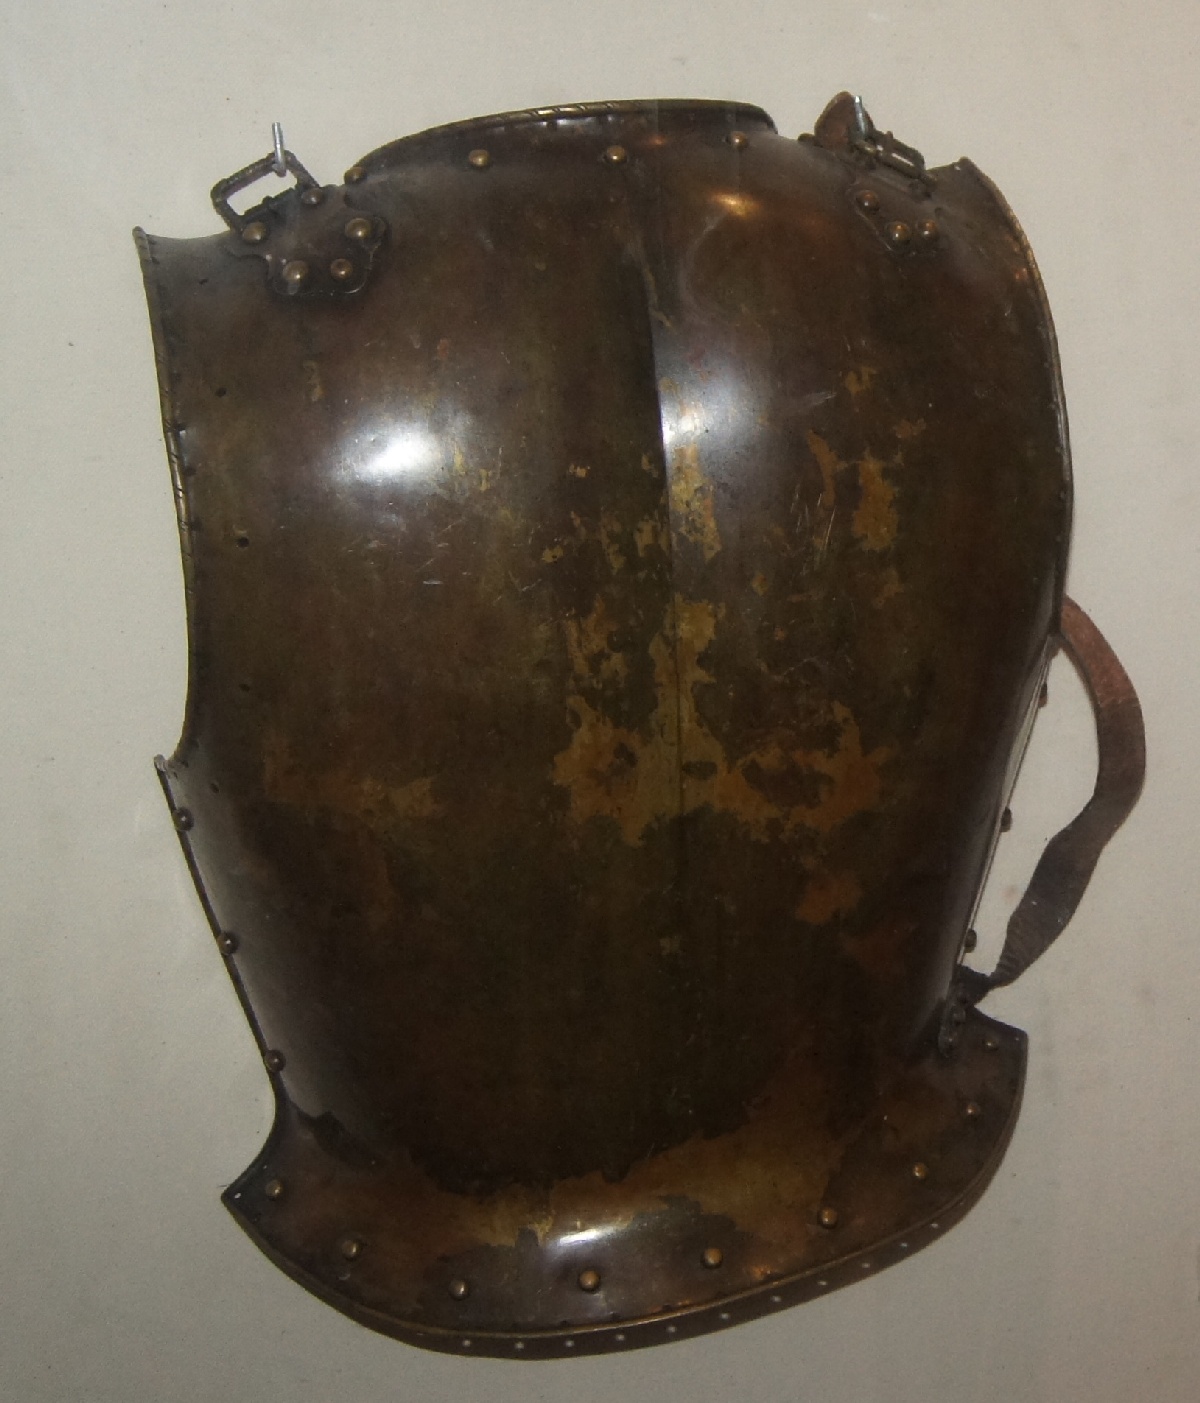 Back armor, 19. century. Rakvere Castle.